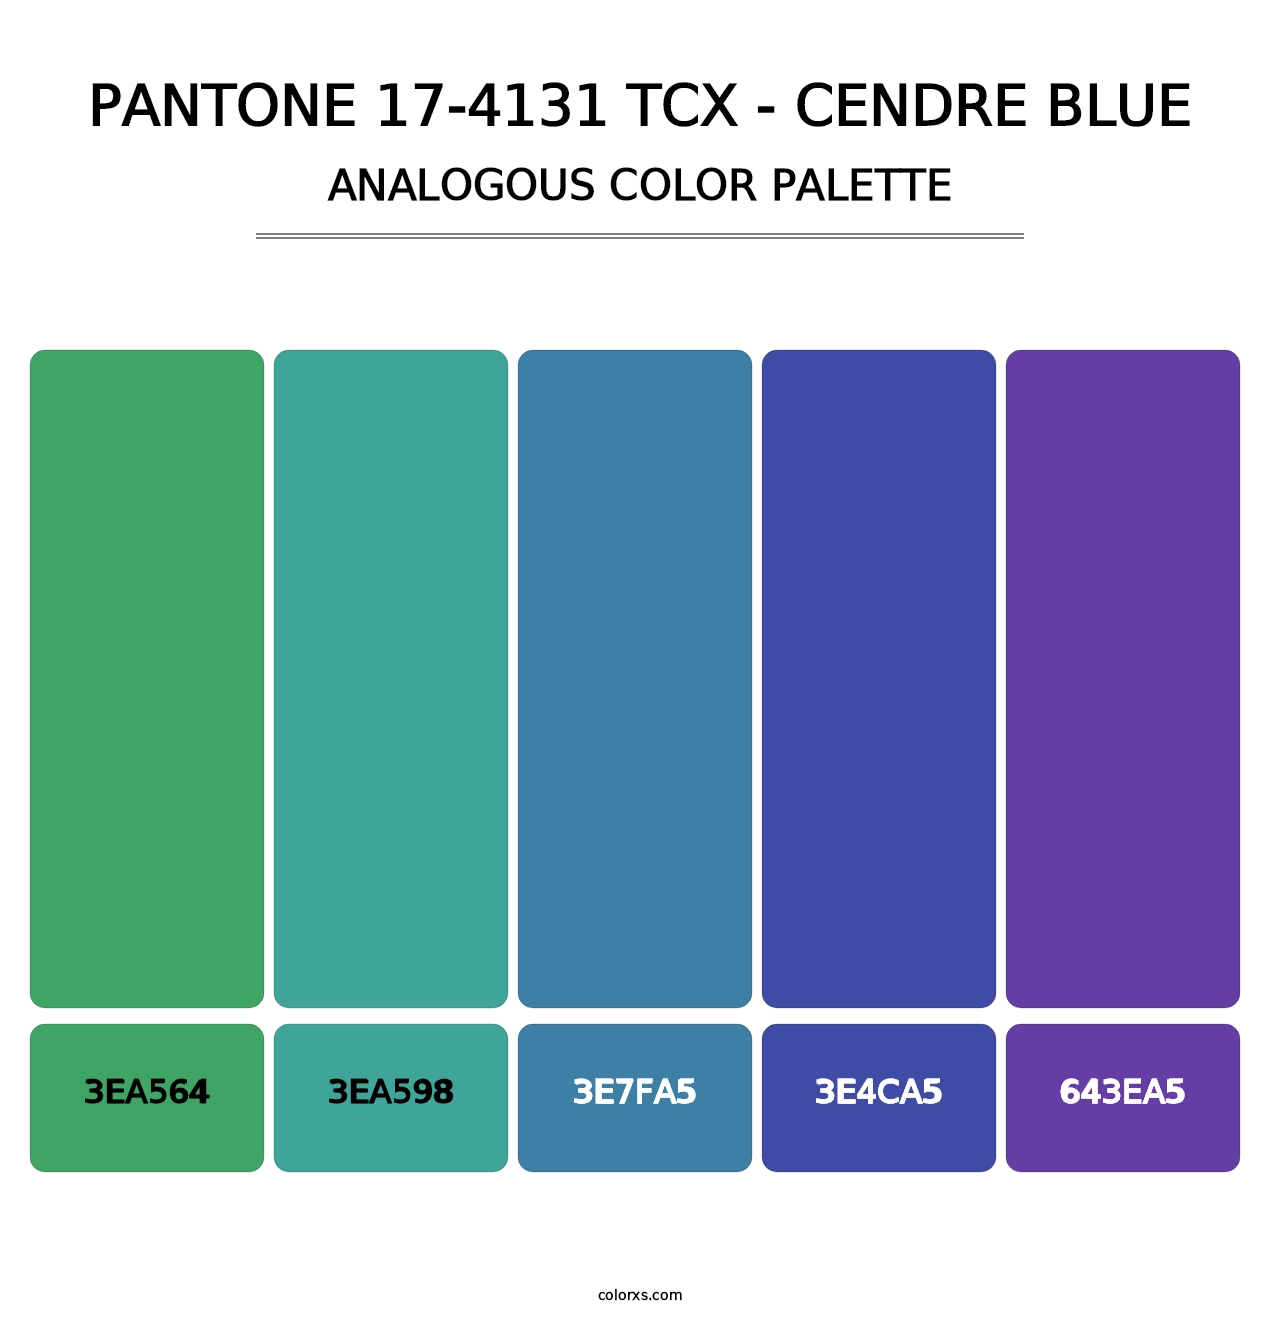 PANTONE 17-4131 TCX - Cendre Blue - Analogous Color Palette